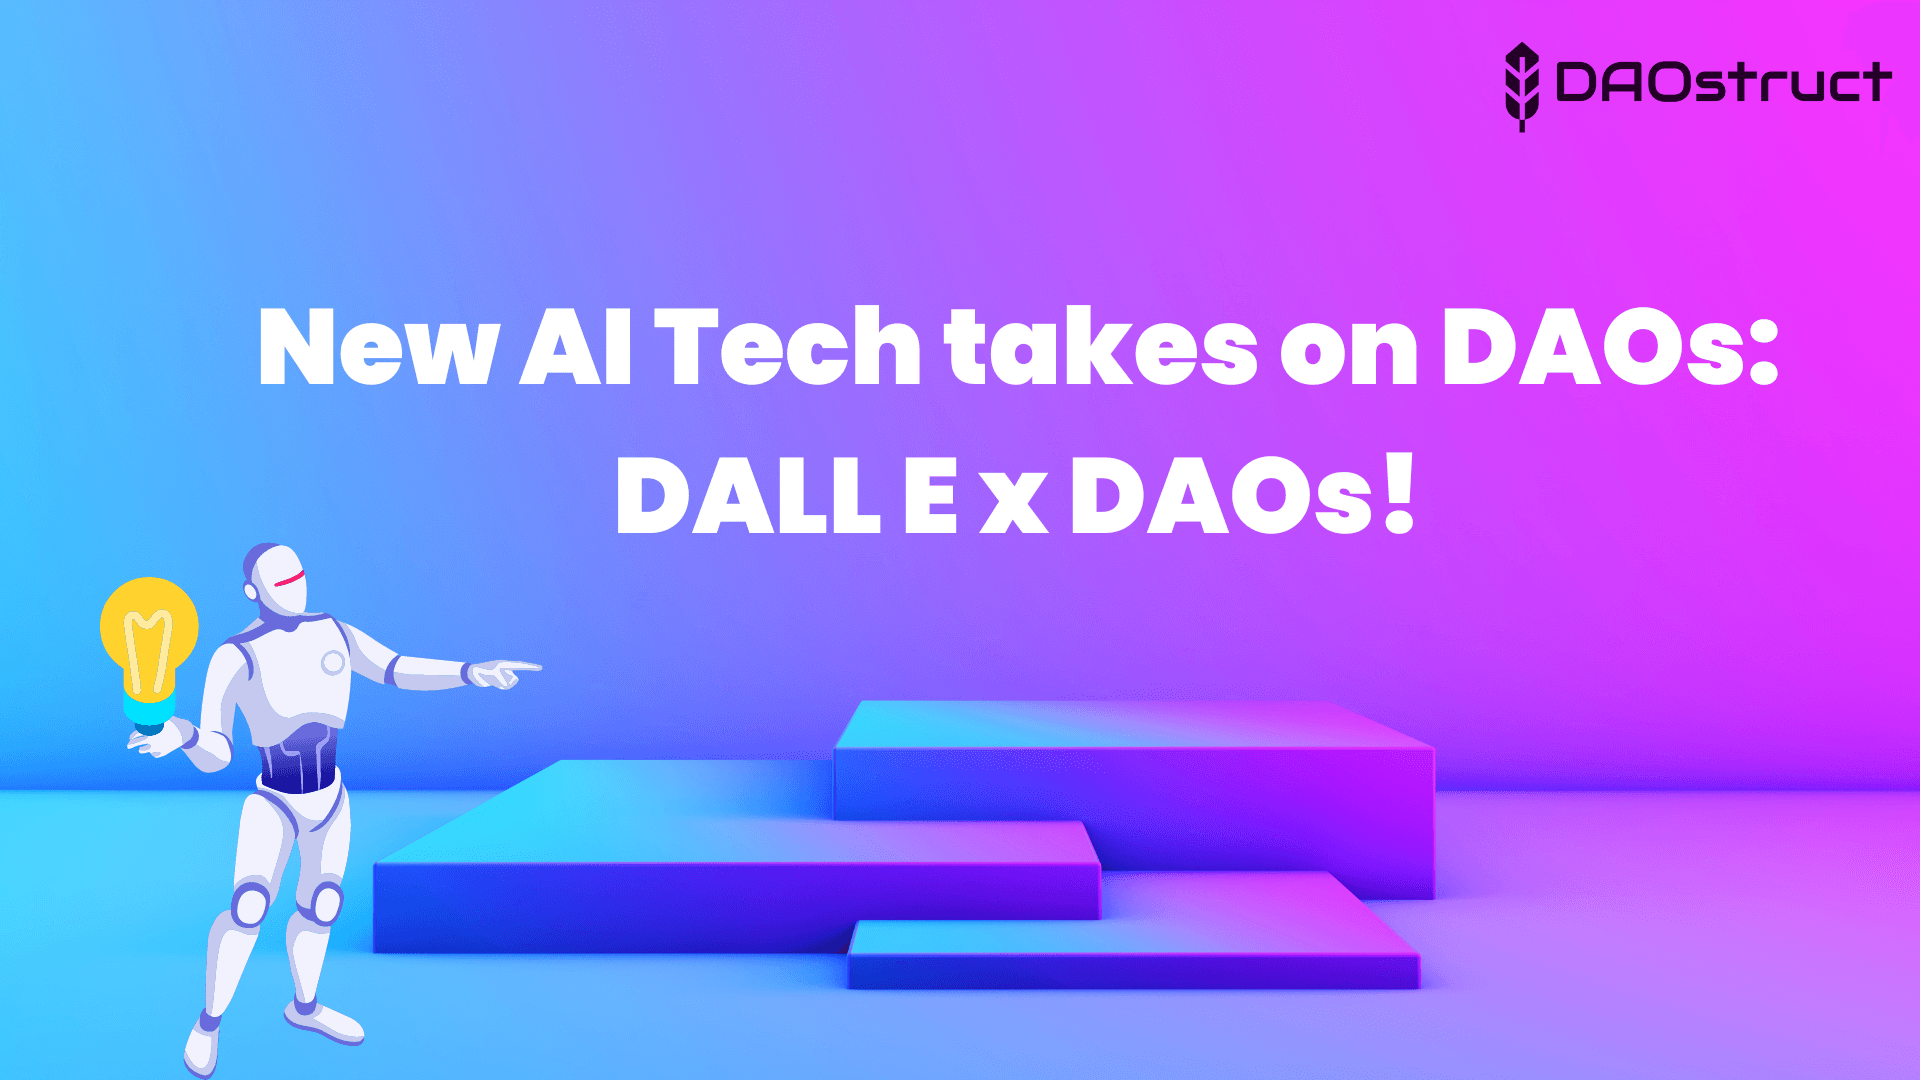 New AI Tech takes on DAOs: DALL E x DAOs!